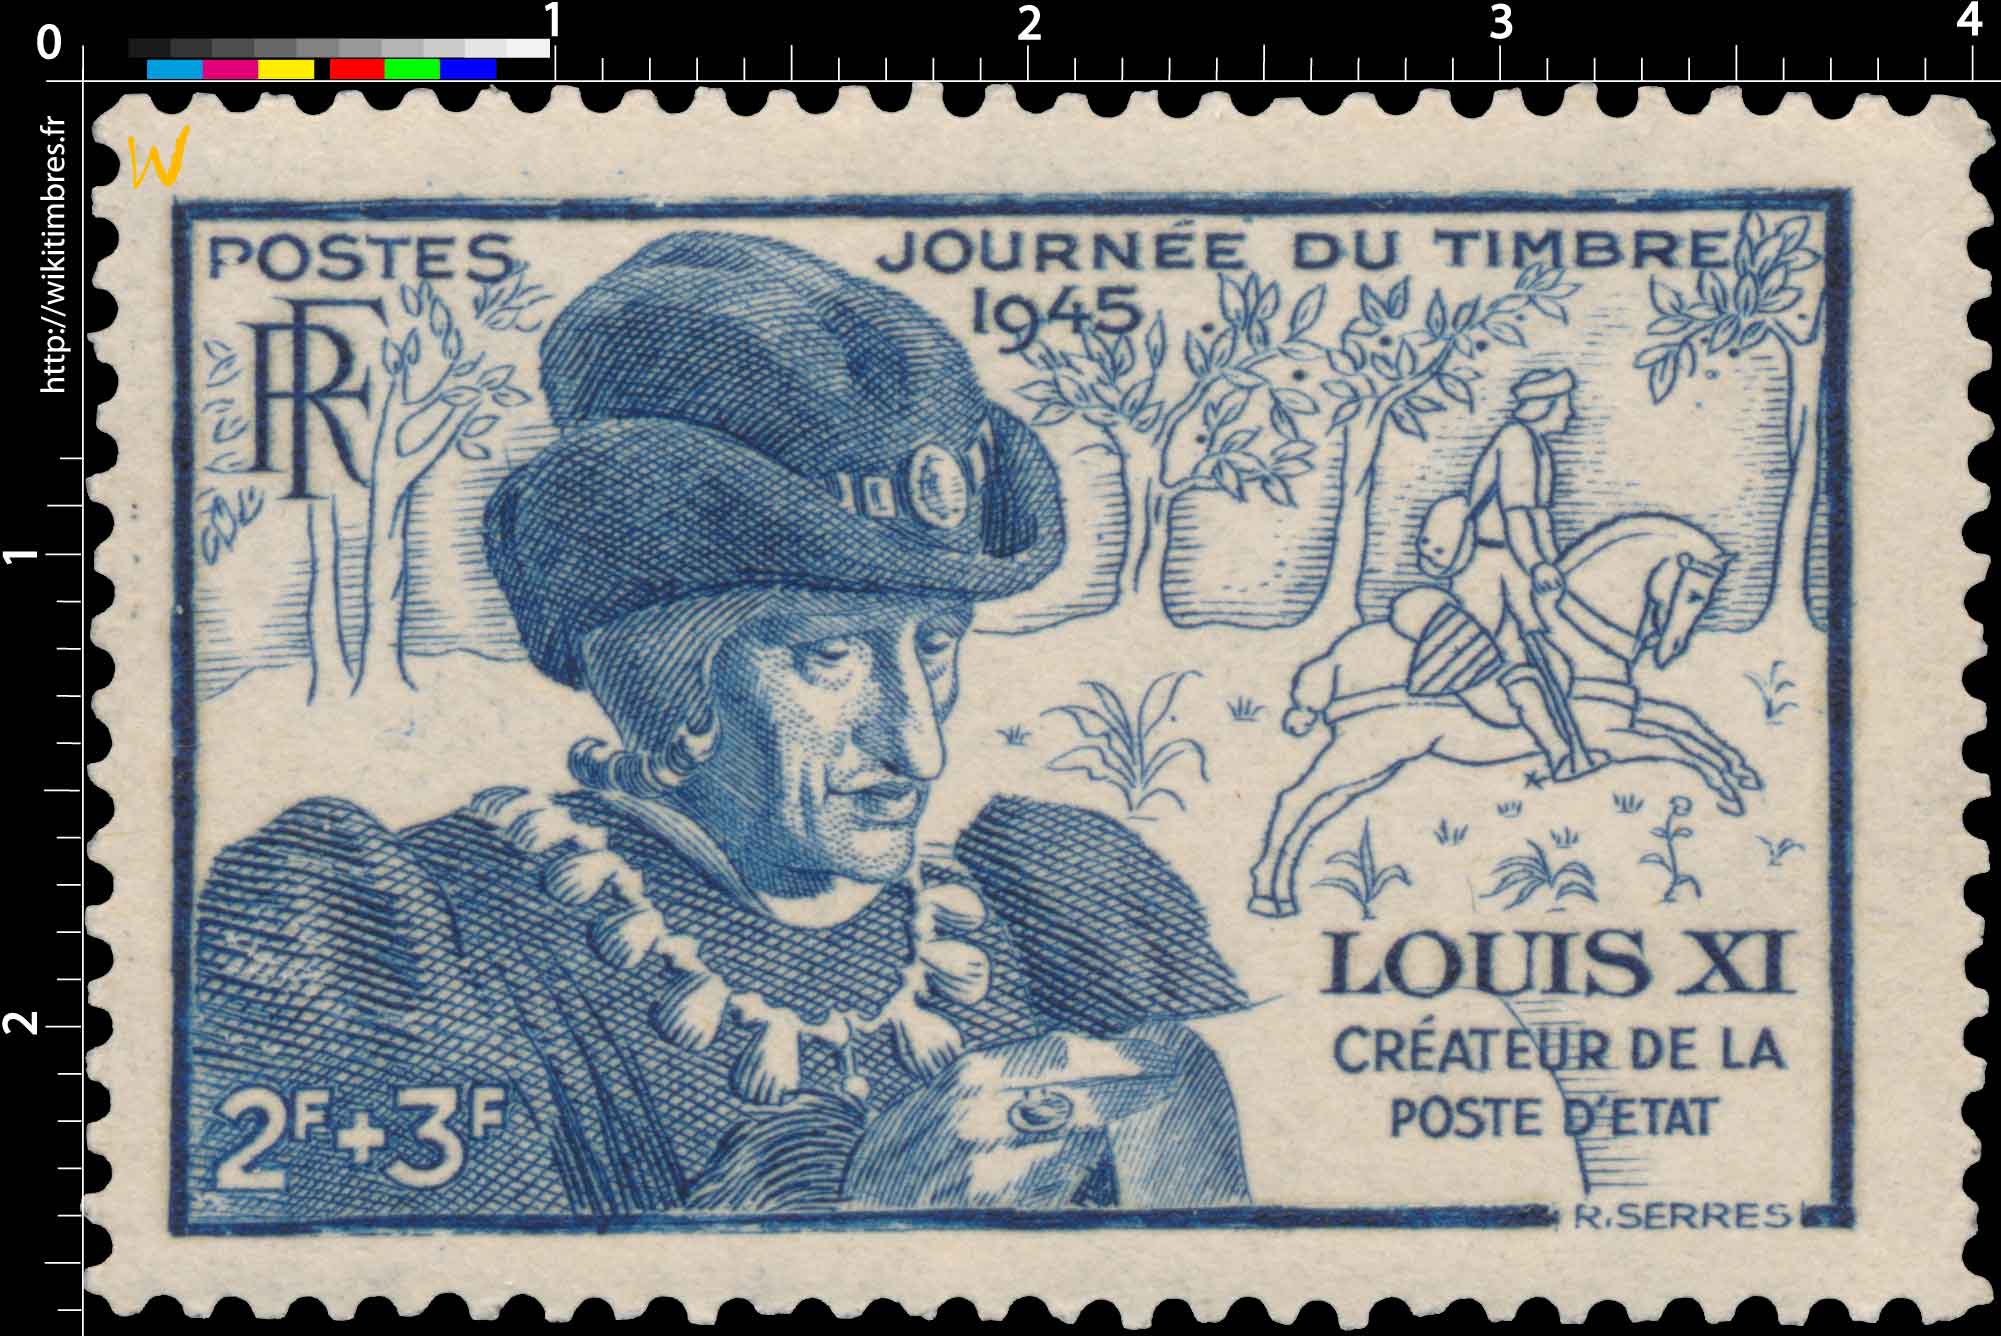 JOURNÉE DU TIMBRE 1945 LOUIS XI CRÉATEUR DE LA POSTE D'ÉTAT